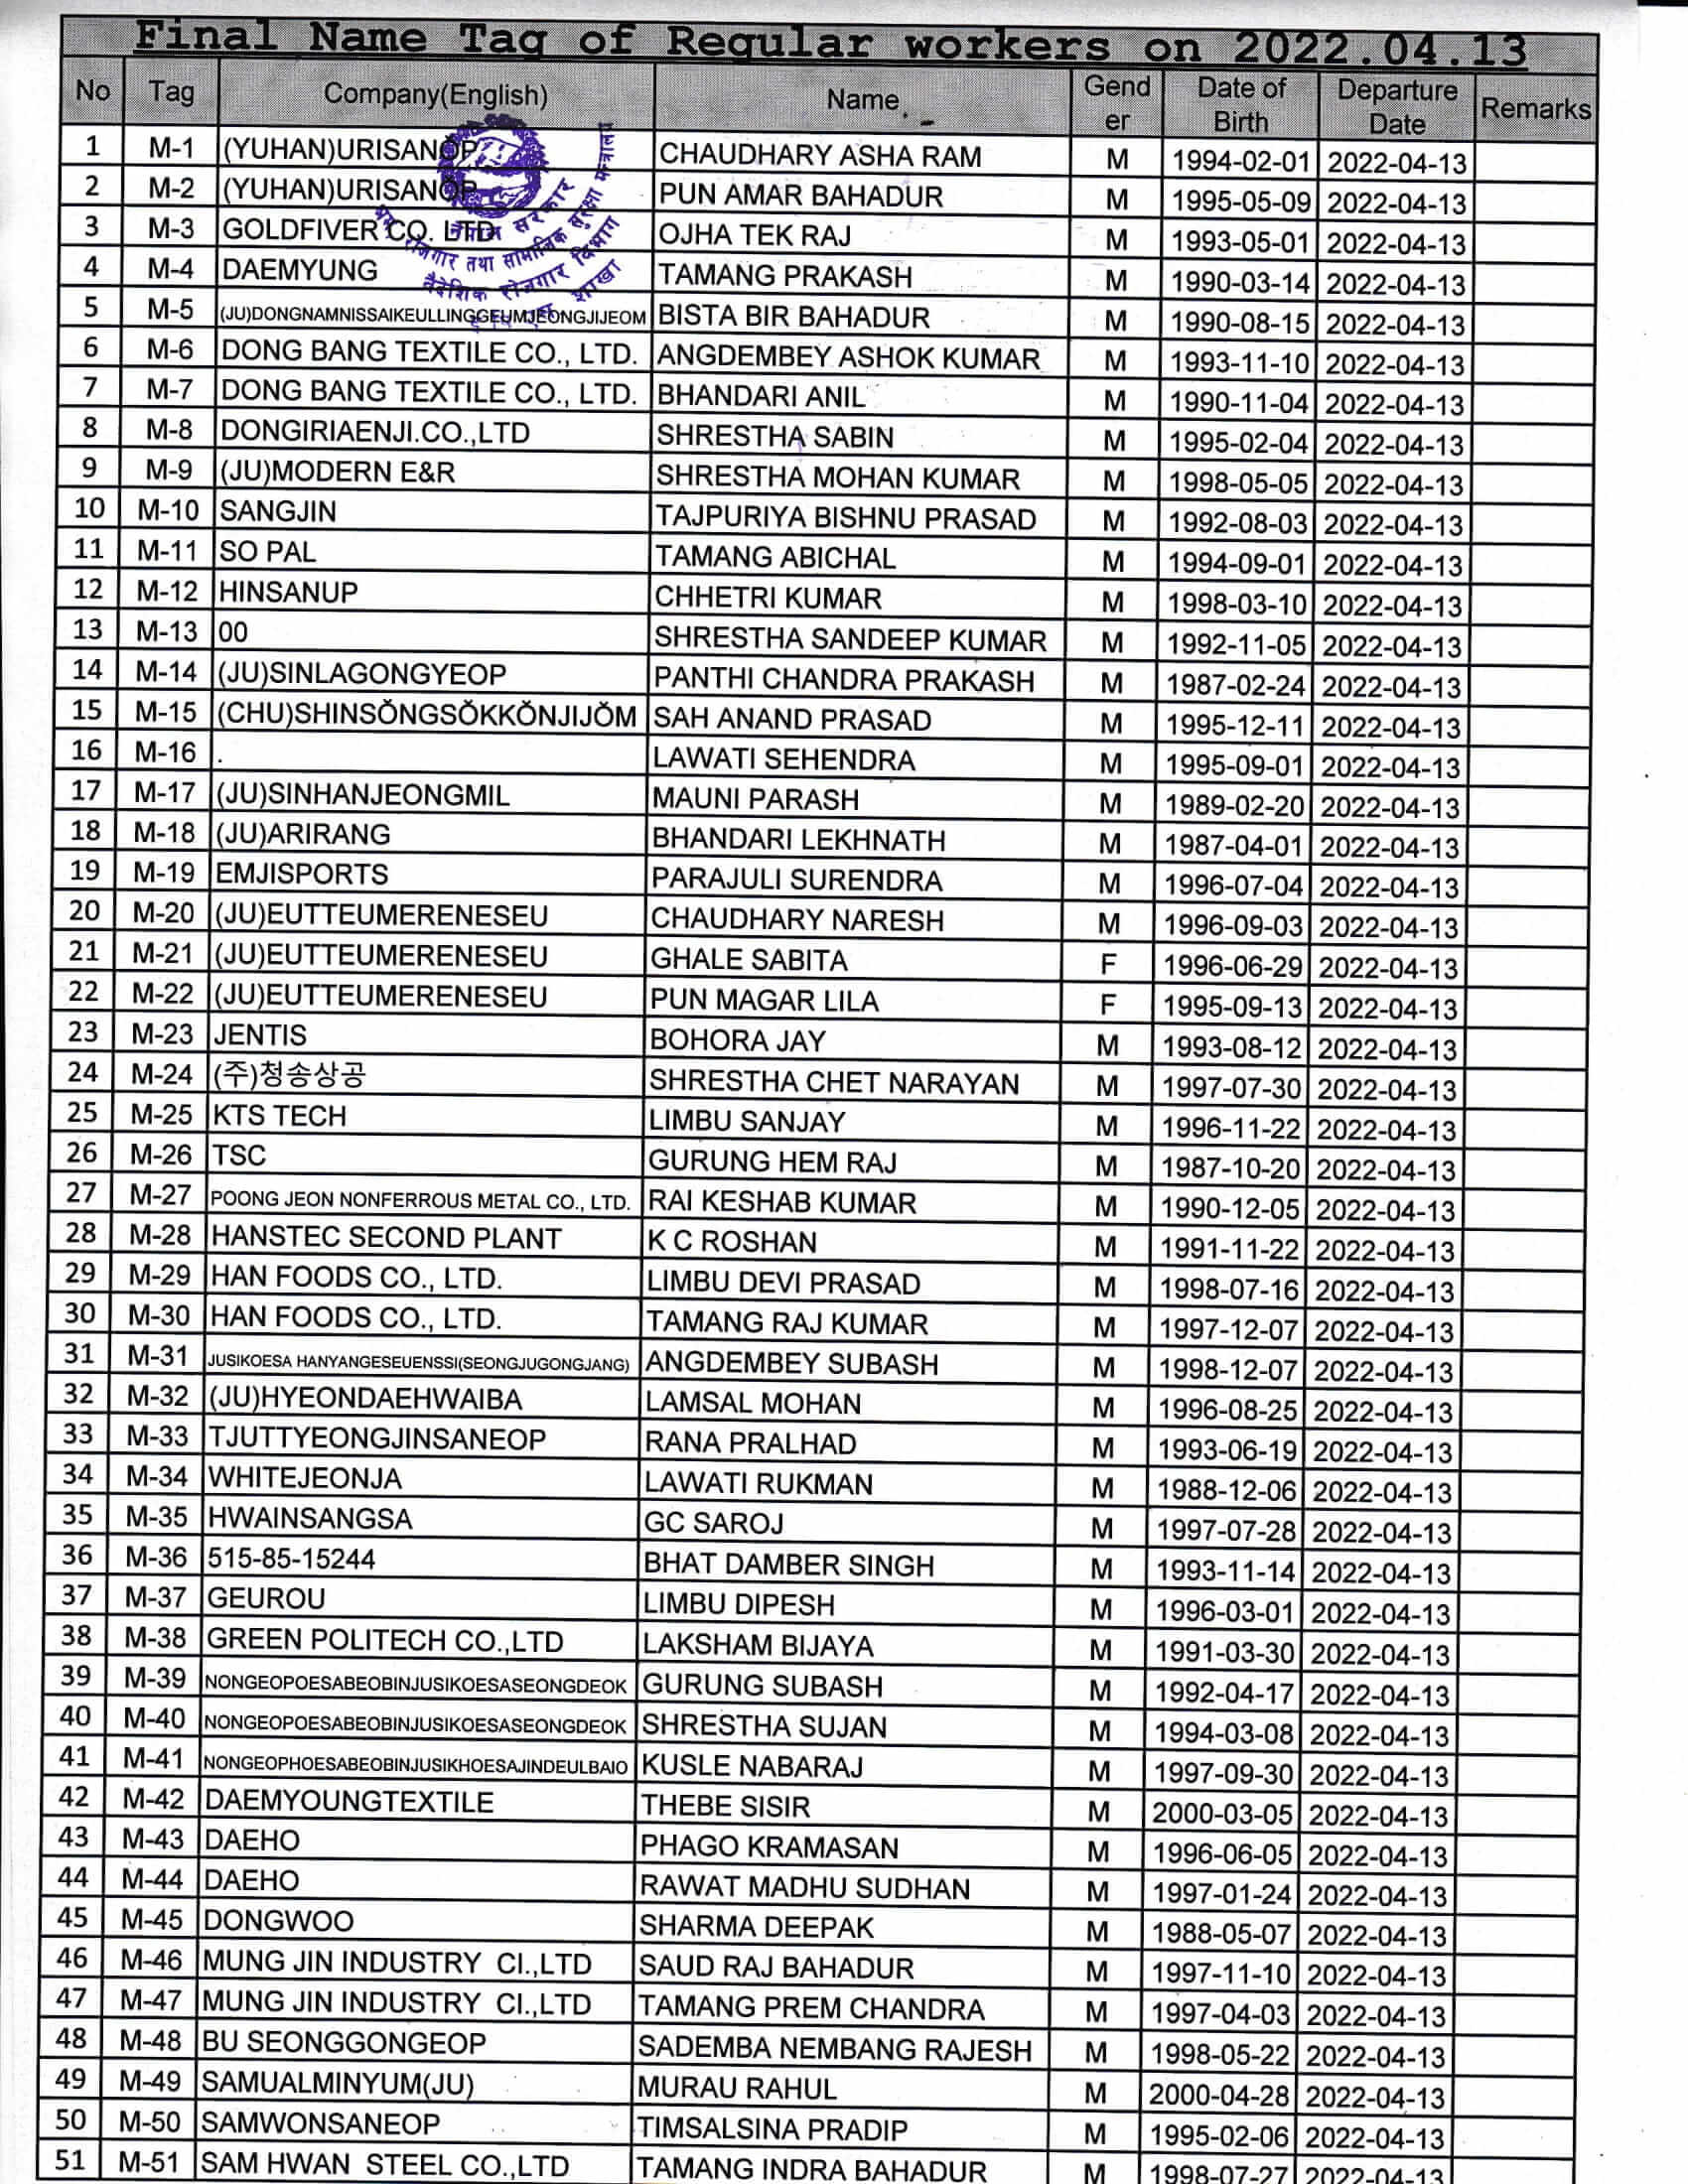 Final Name Lists of RW on 13 April 2022